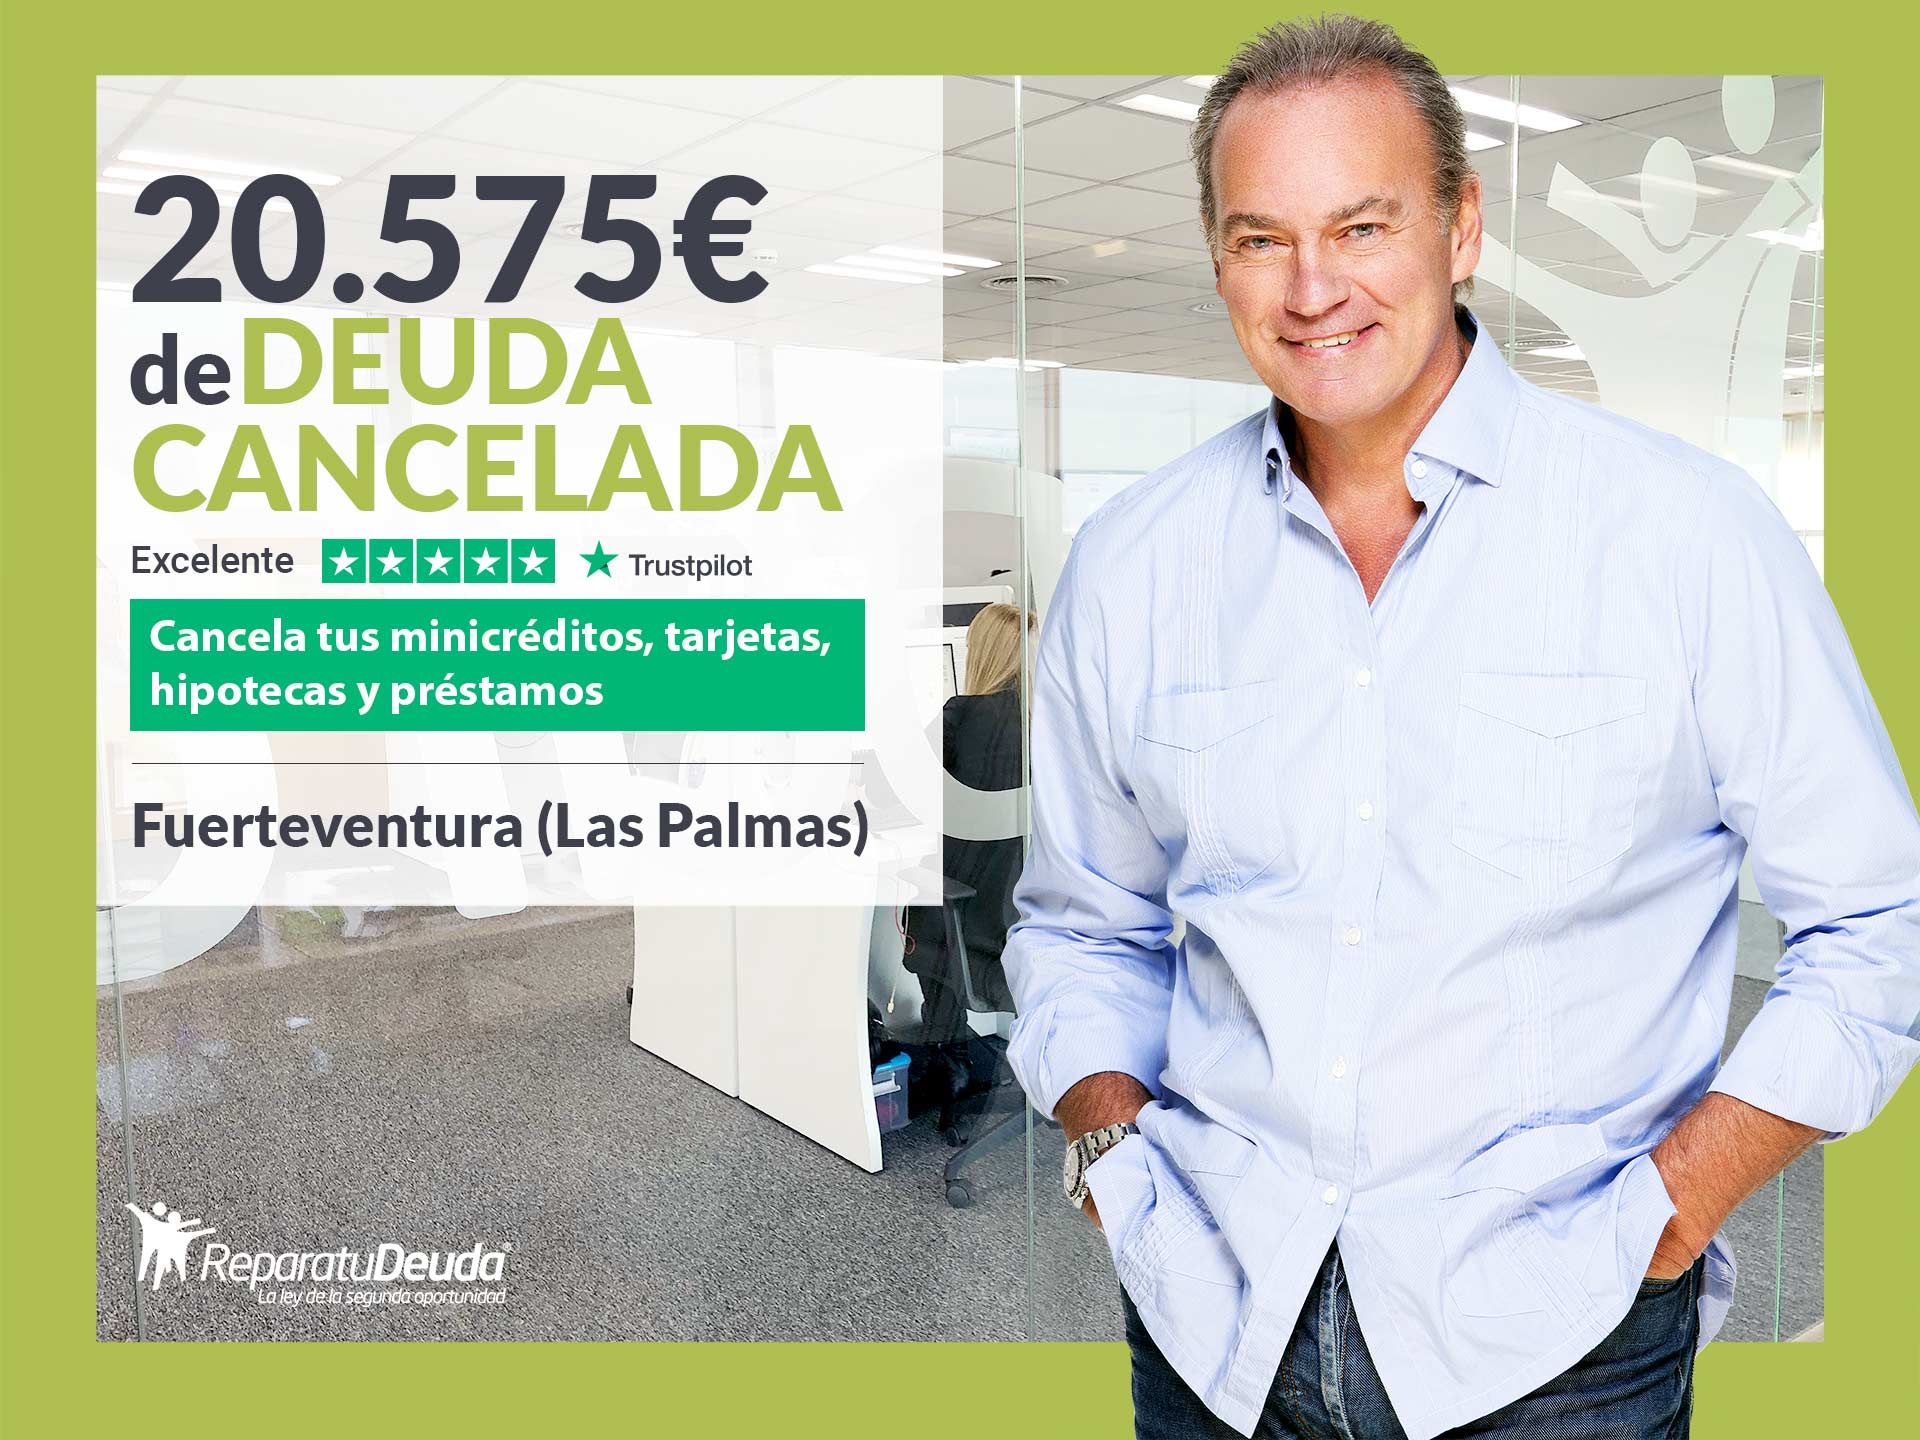 Repara tu Deuda Abogados cancela 20.575? en Fuerteventura (Las Palmas) con la Ley de Segunda Oportunidad